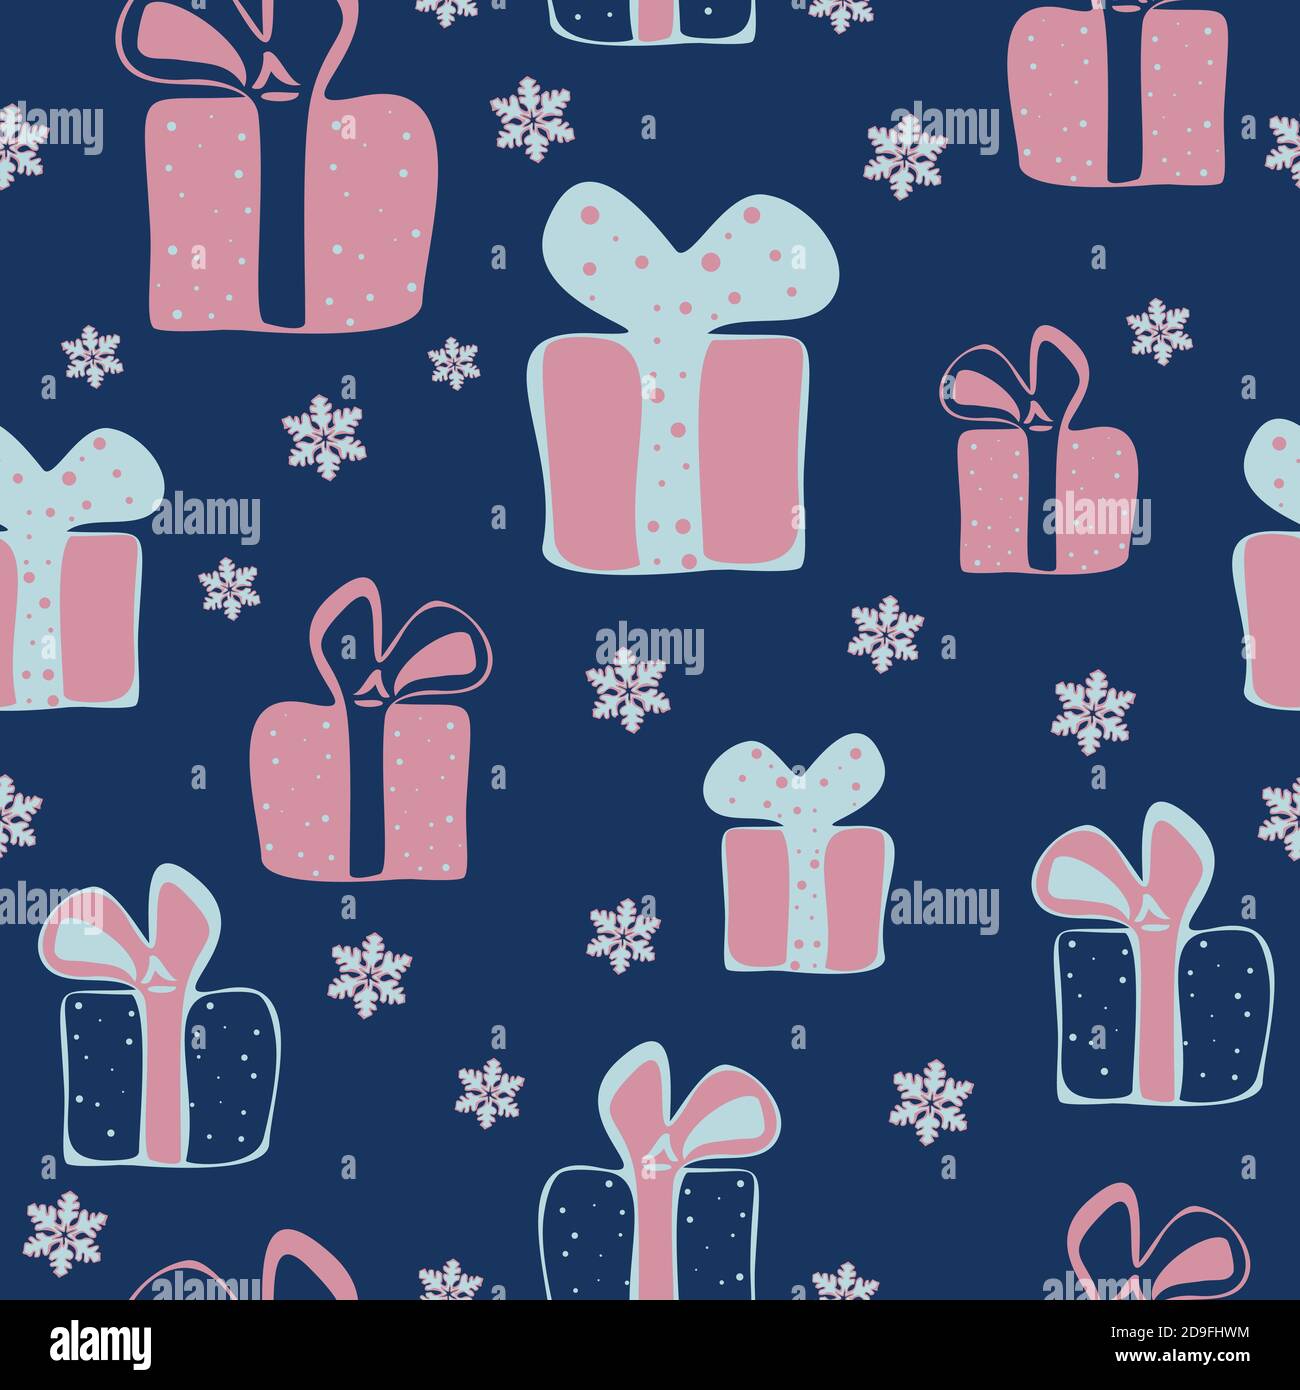 Vektor nahtlose Muster mit bunten Geschenk-Boxen im Cartoon-Stil auf einem dunkelblauen Hintergrund. Muster für Stoffdruck, Geschenkpapier-Design. Stock Vektor